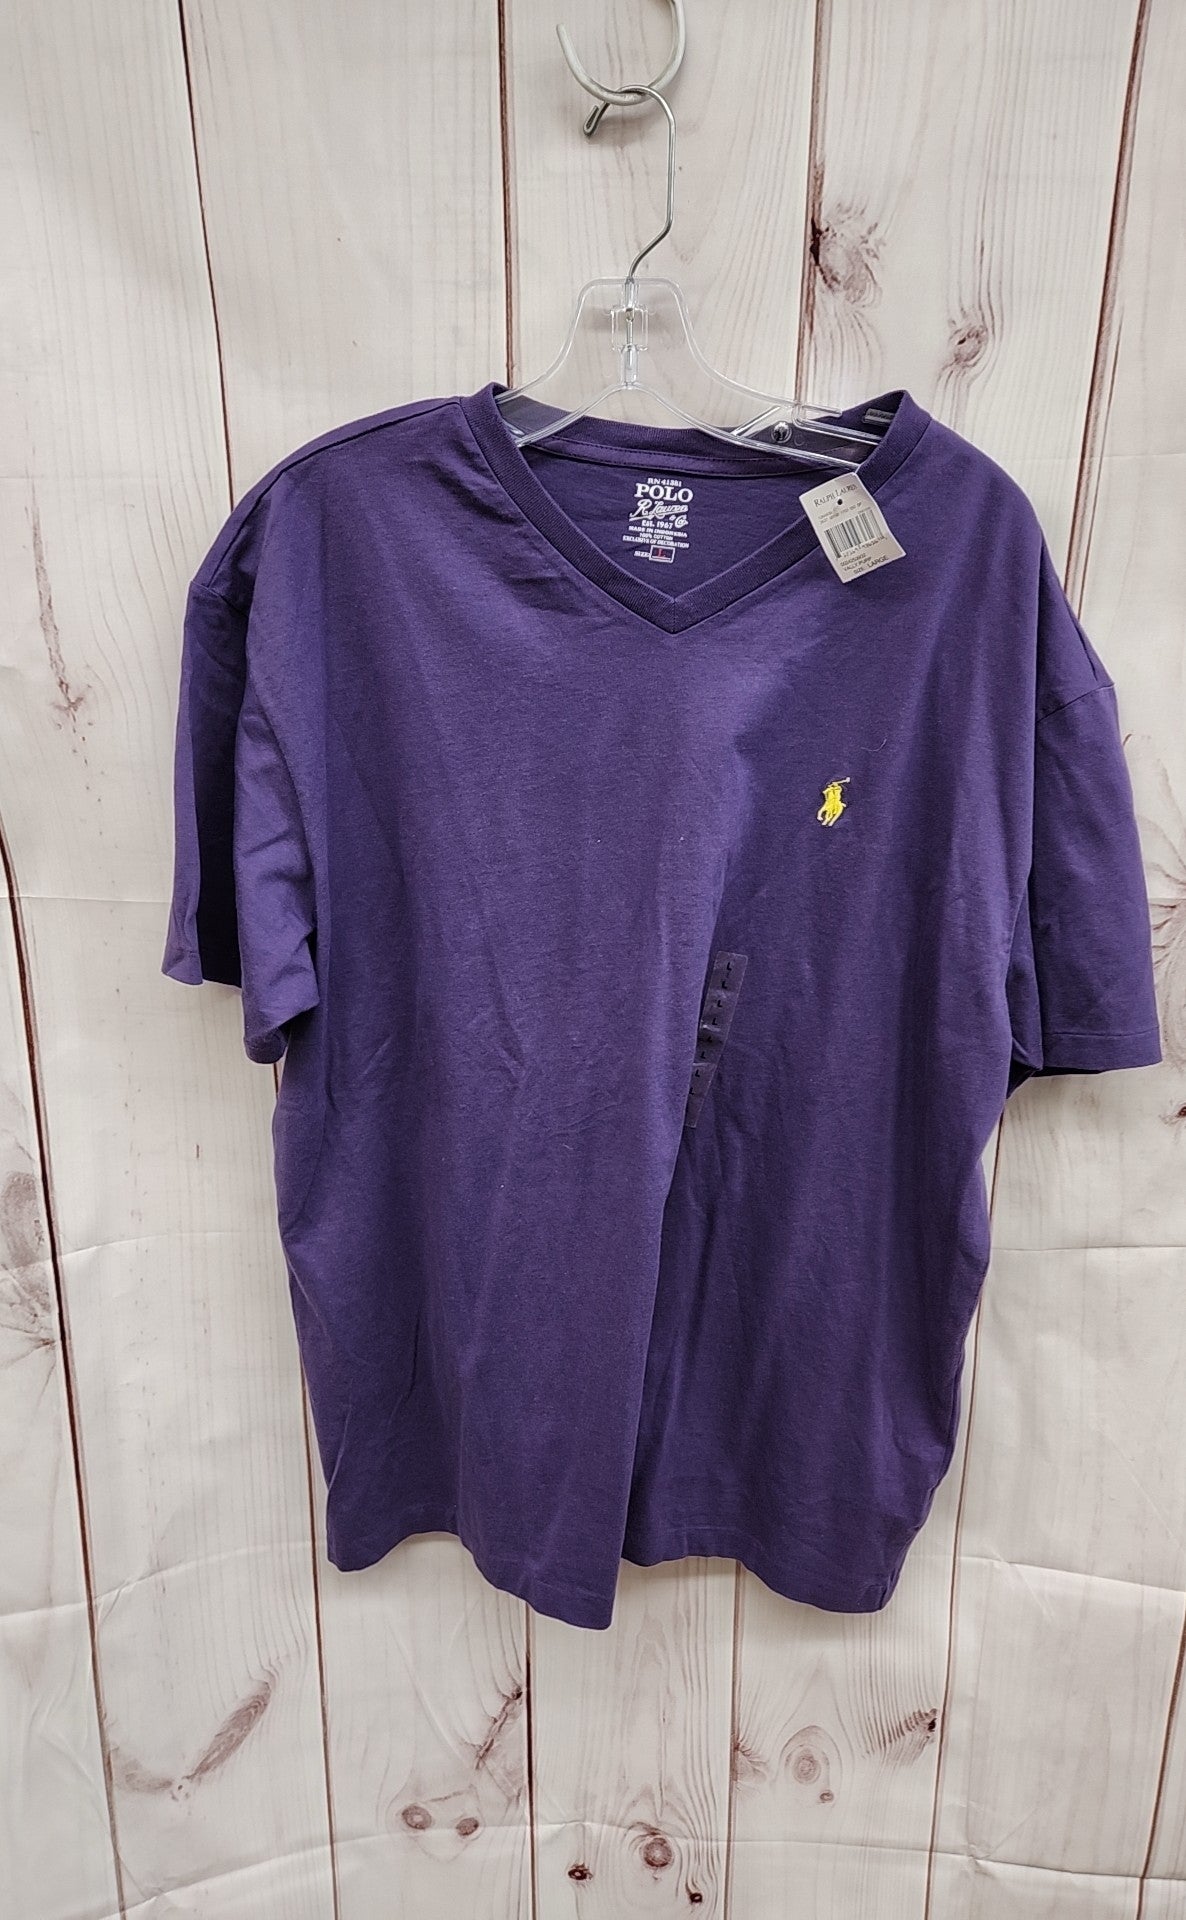 Polo by Ralph Lauren Men's Size L Purple Shirt